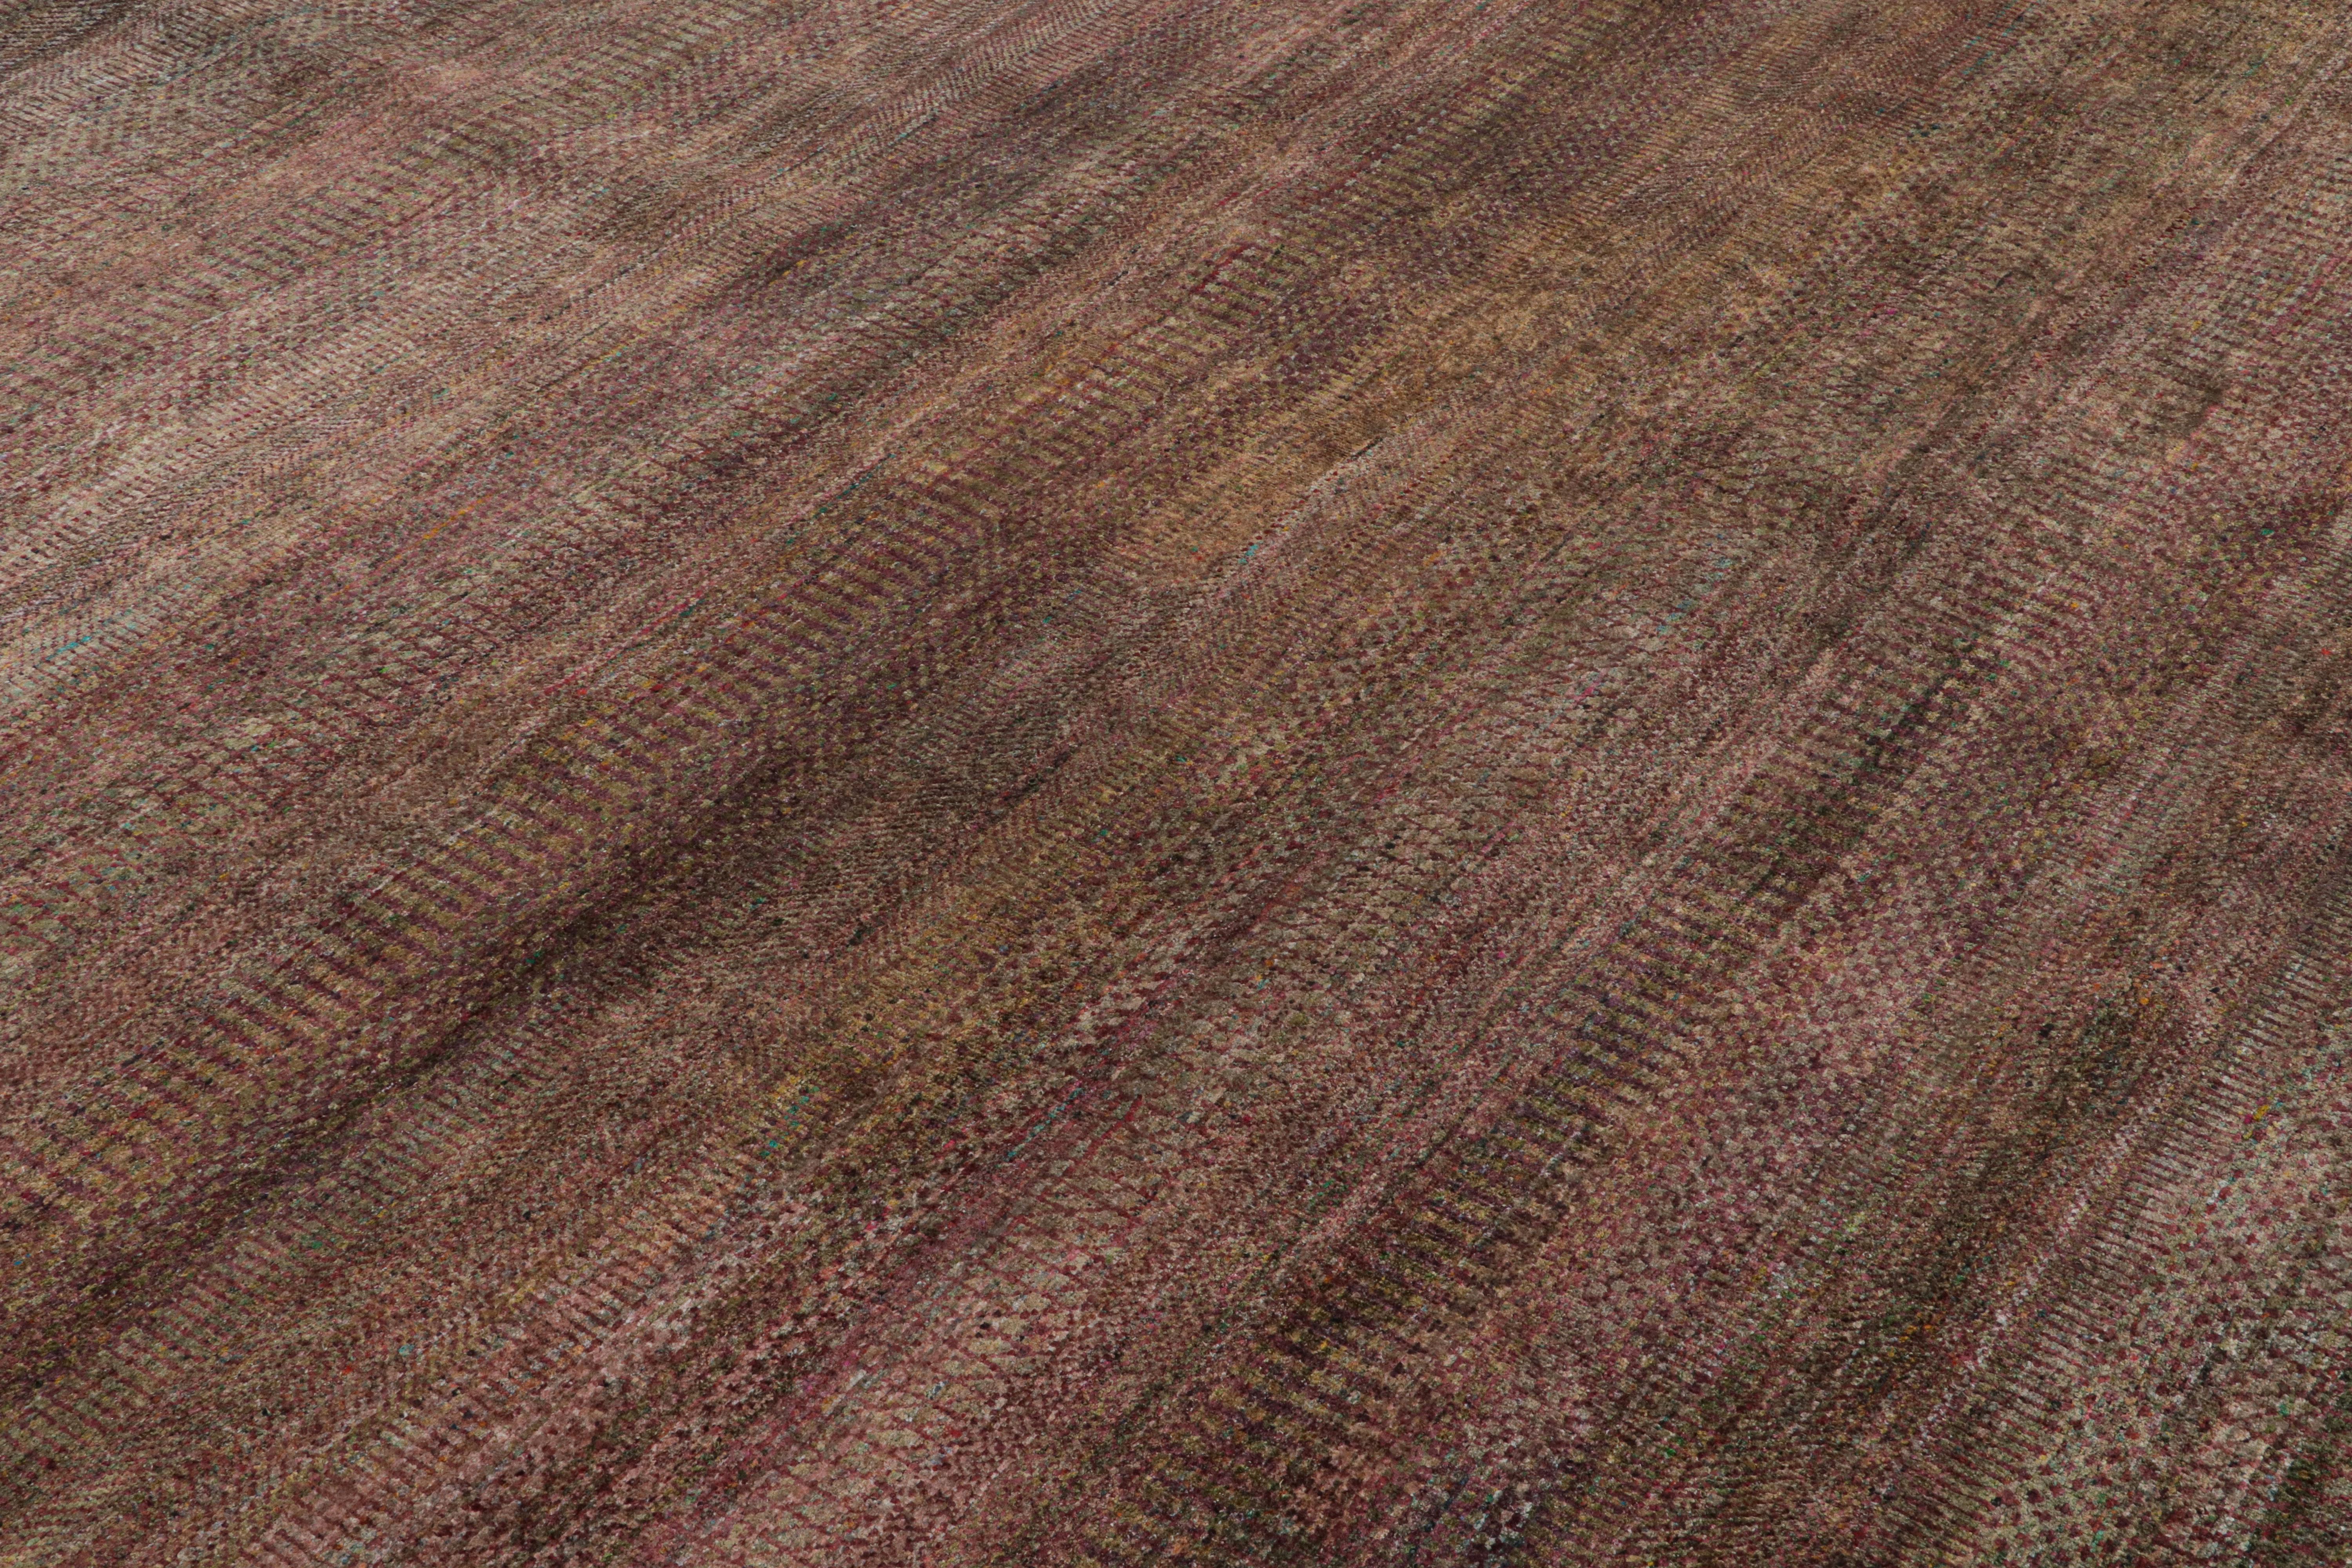 Ce tapis texturé 10x14 est un nouvel ajout audacieux à la Collection Texture of Color de Rug & Kilim.

Sur le Design :

Réalisé en soie nouée à la main, ce tapis reflète une nouvelle approche du thème de cette collection, notamment une teinture